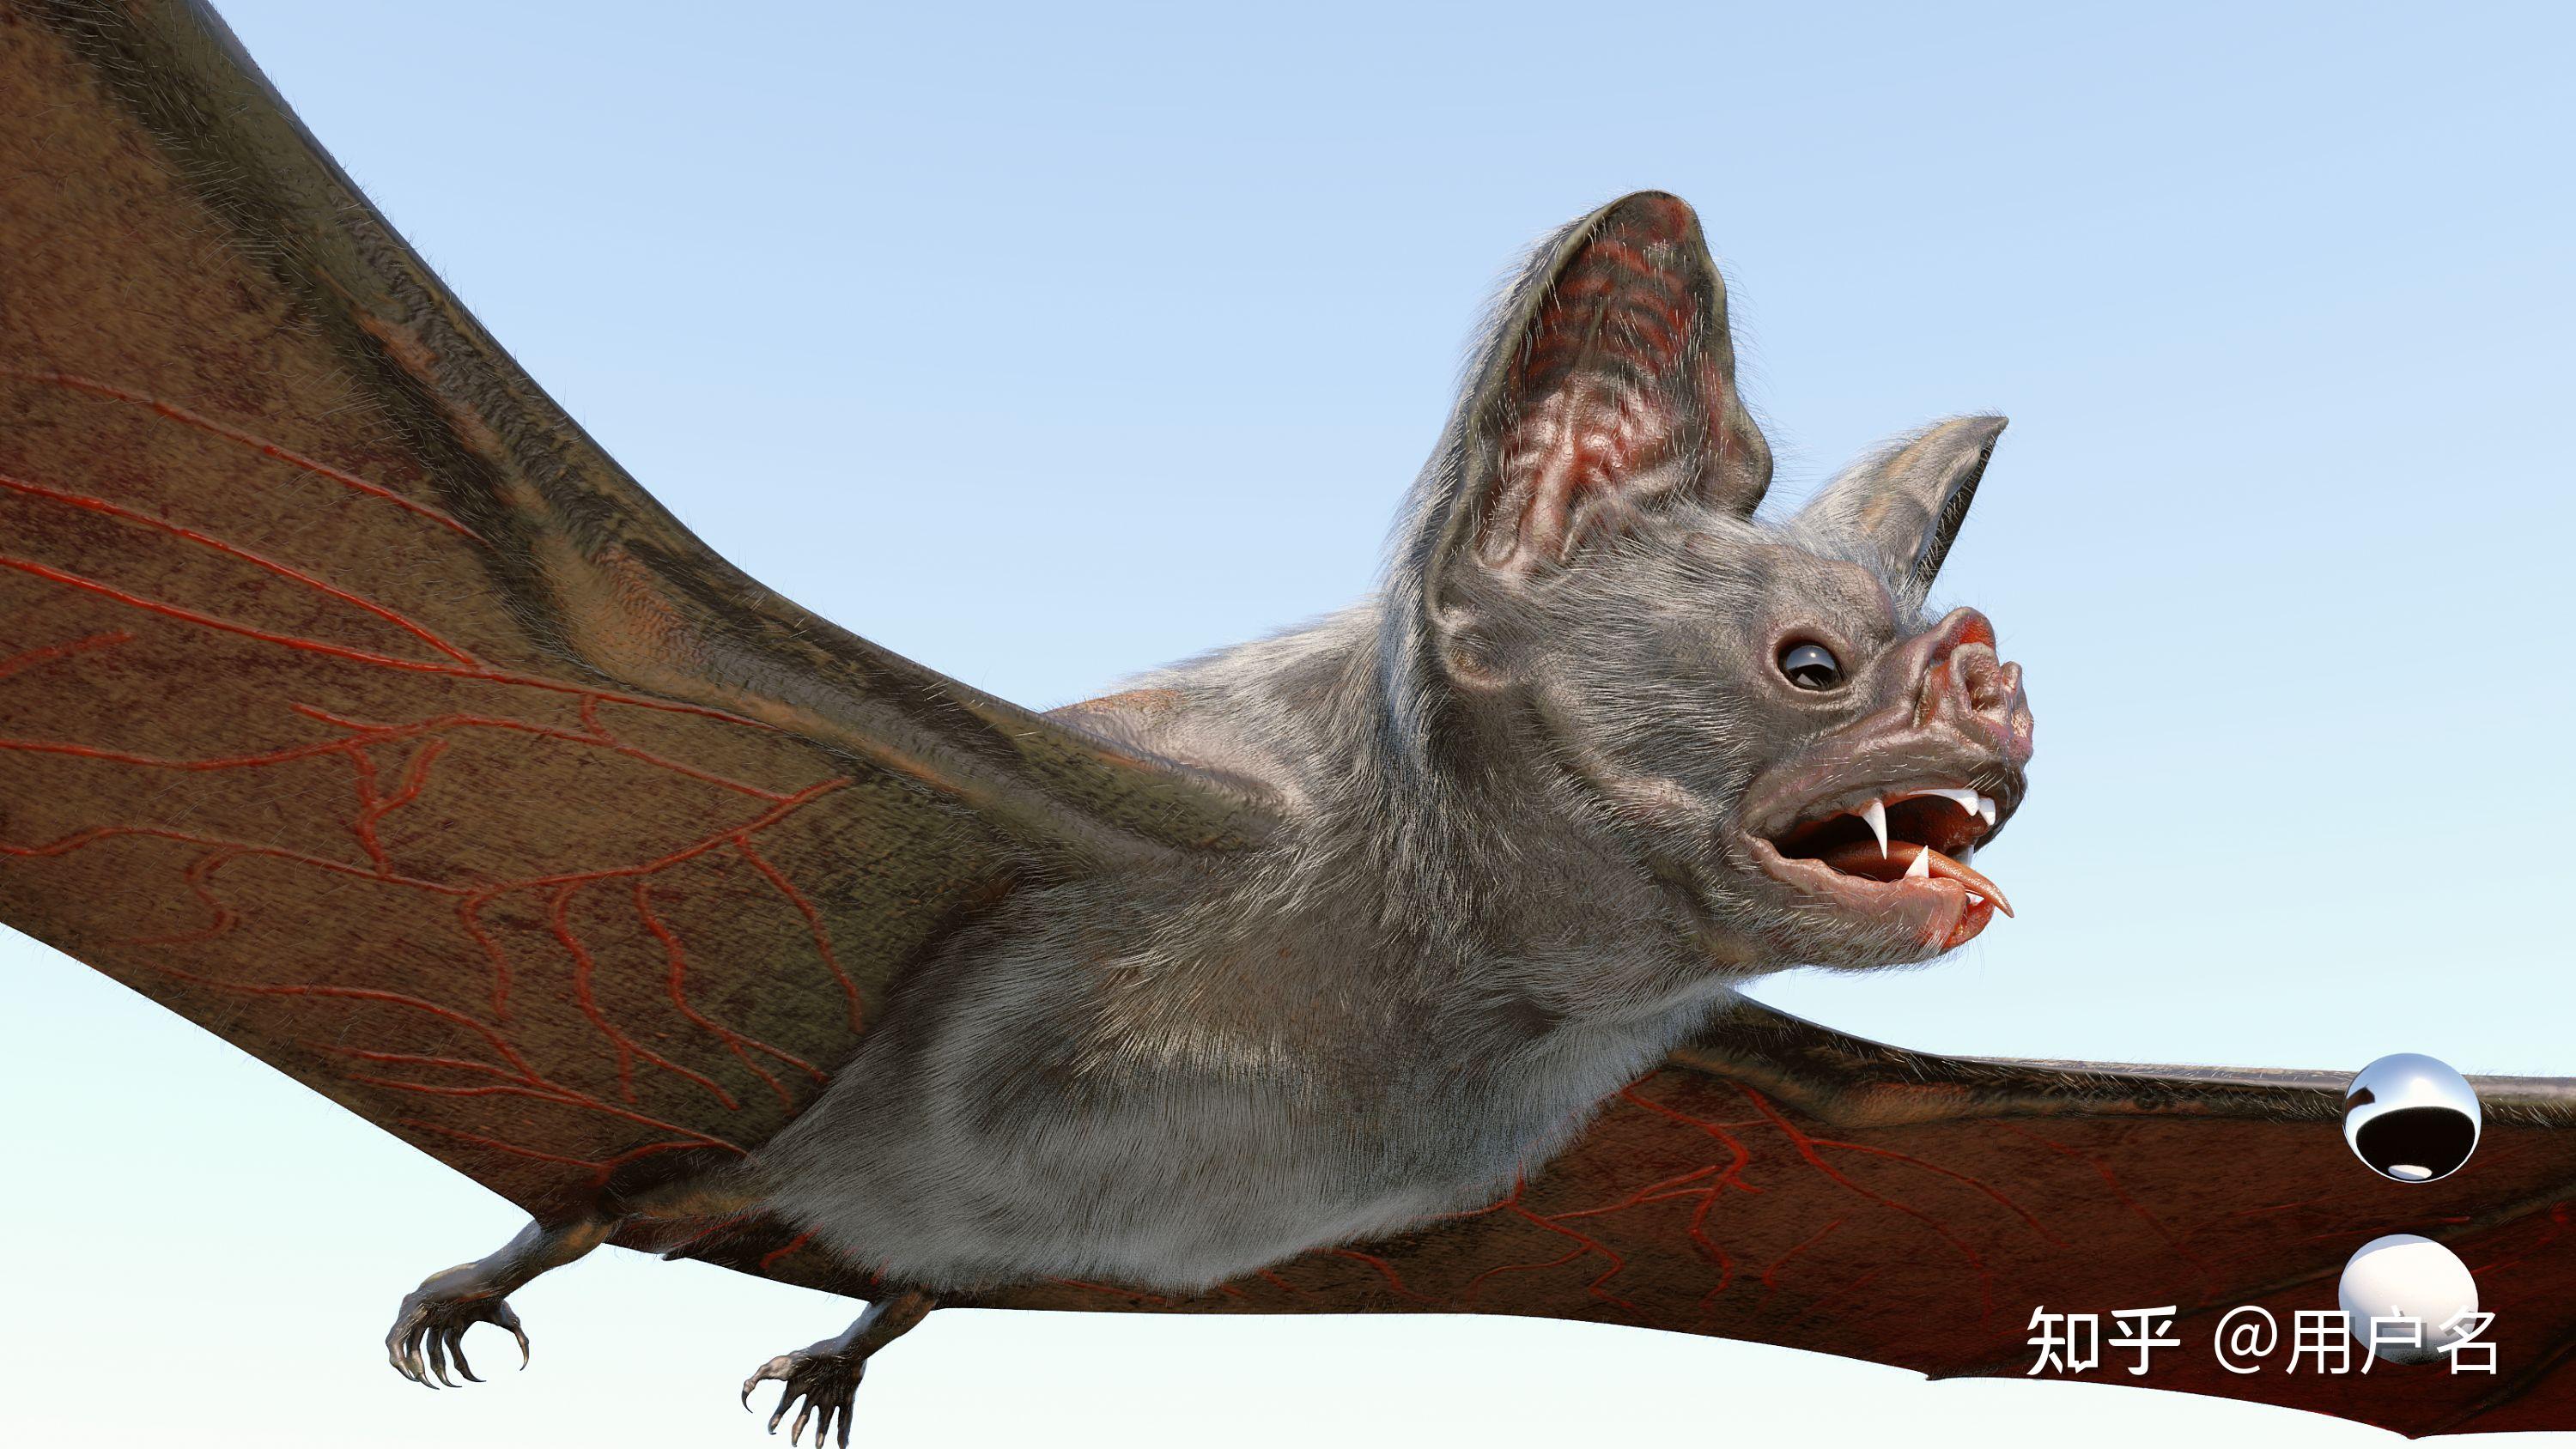 蝙蝠是否能发出正常人能听到的声音? 